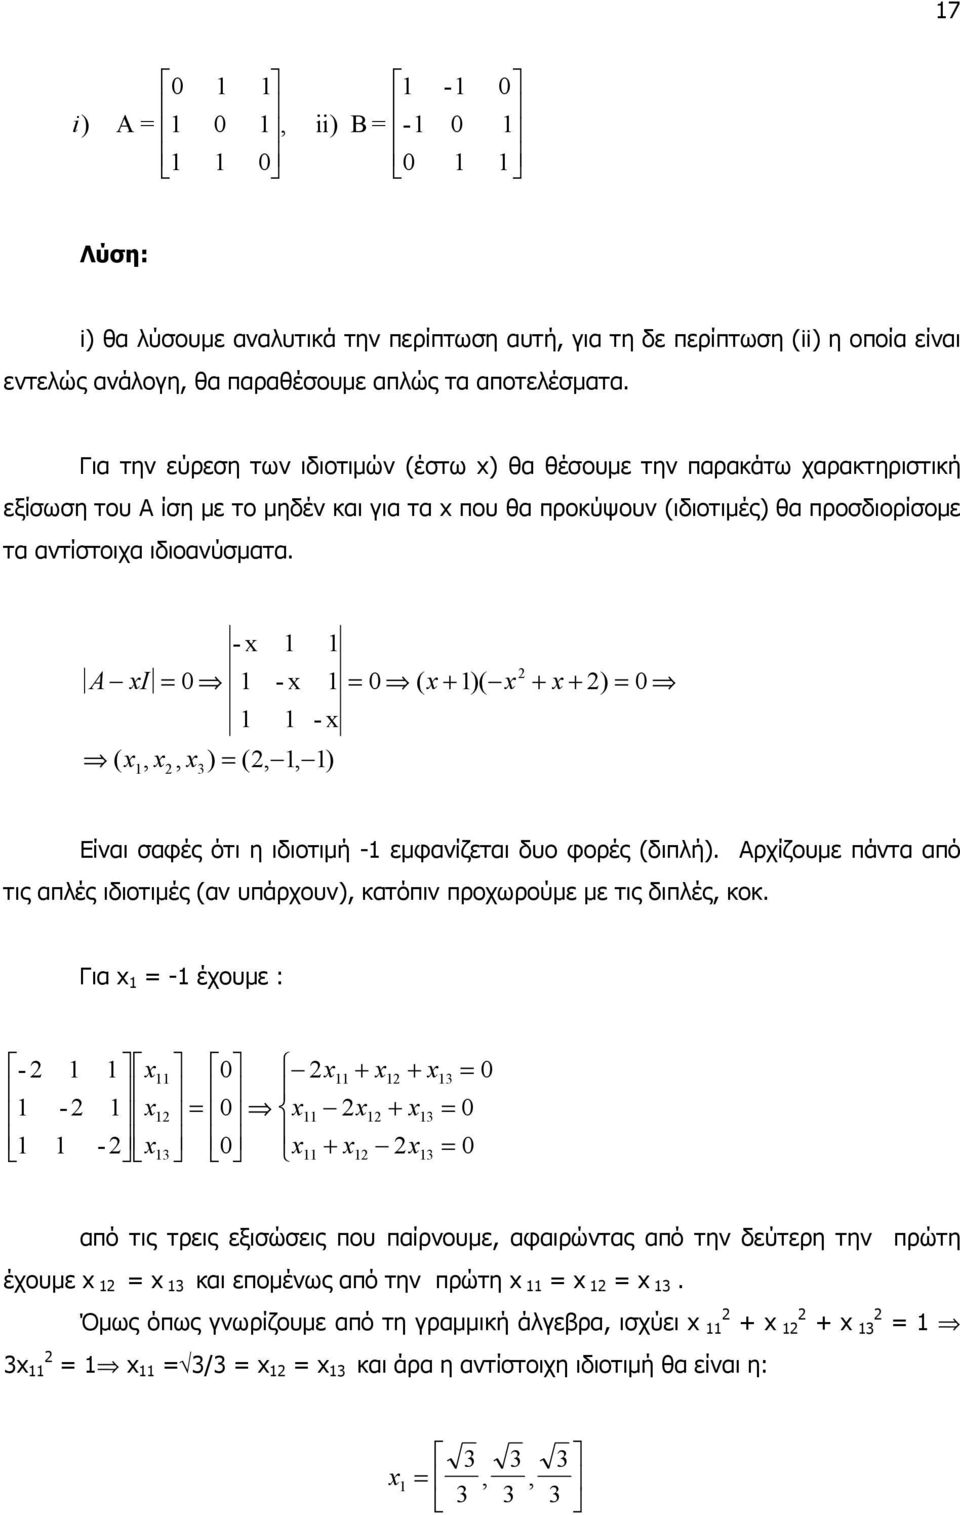 - x 1 1 A x = 0 1 - x 1 = 0 ( x+ 1)( x + x+ ) = 0 1 1 - x ( x, x, x ) = (, 1, 1) 1 3 Είναι σαφές ότι η ιδιοτιµή -1 εµφανίζεται δυο φορές (διπλή).